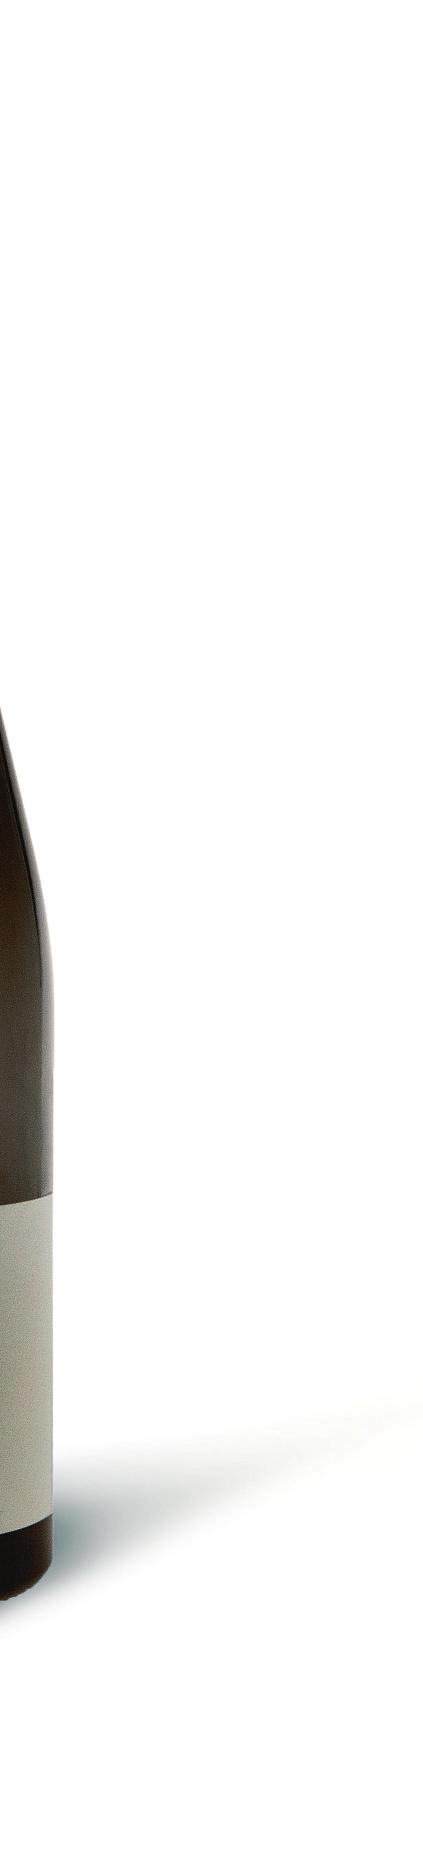 Weißwein edelsüß 0,5 l und 0,75 l 2016_2 Rieslaner 10,00 13,33 / ltr. Spätlese lieblich Weinnr. 7056 Frankenweinmedaille Gold 2016_1 Riesling 19,90 Nordheimer Kreuzberg 39,80 / ltr.